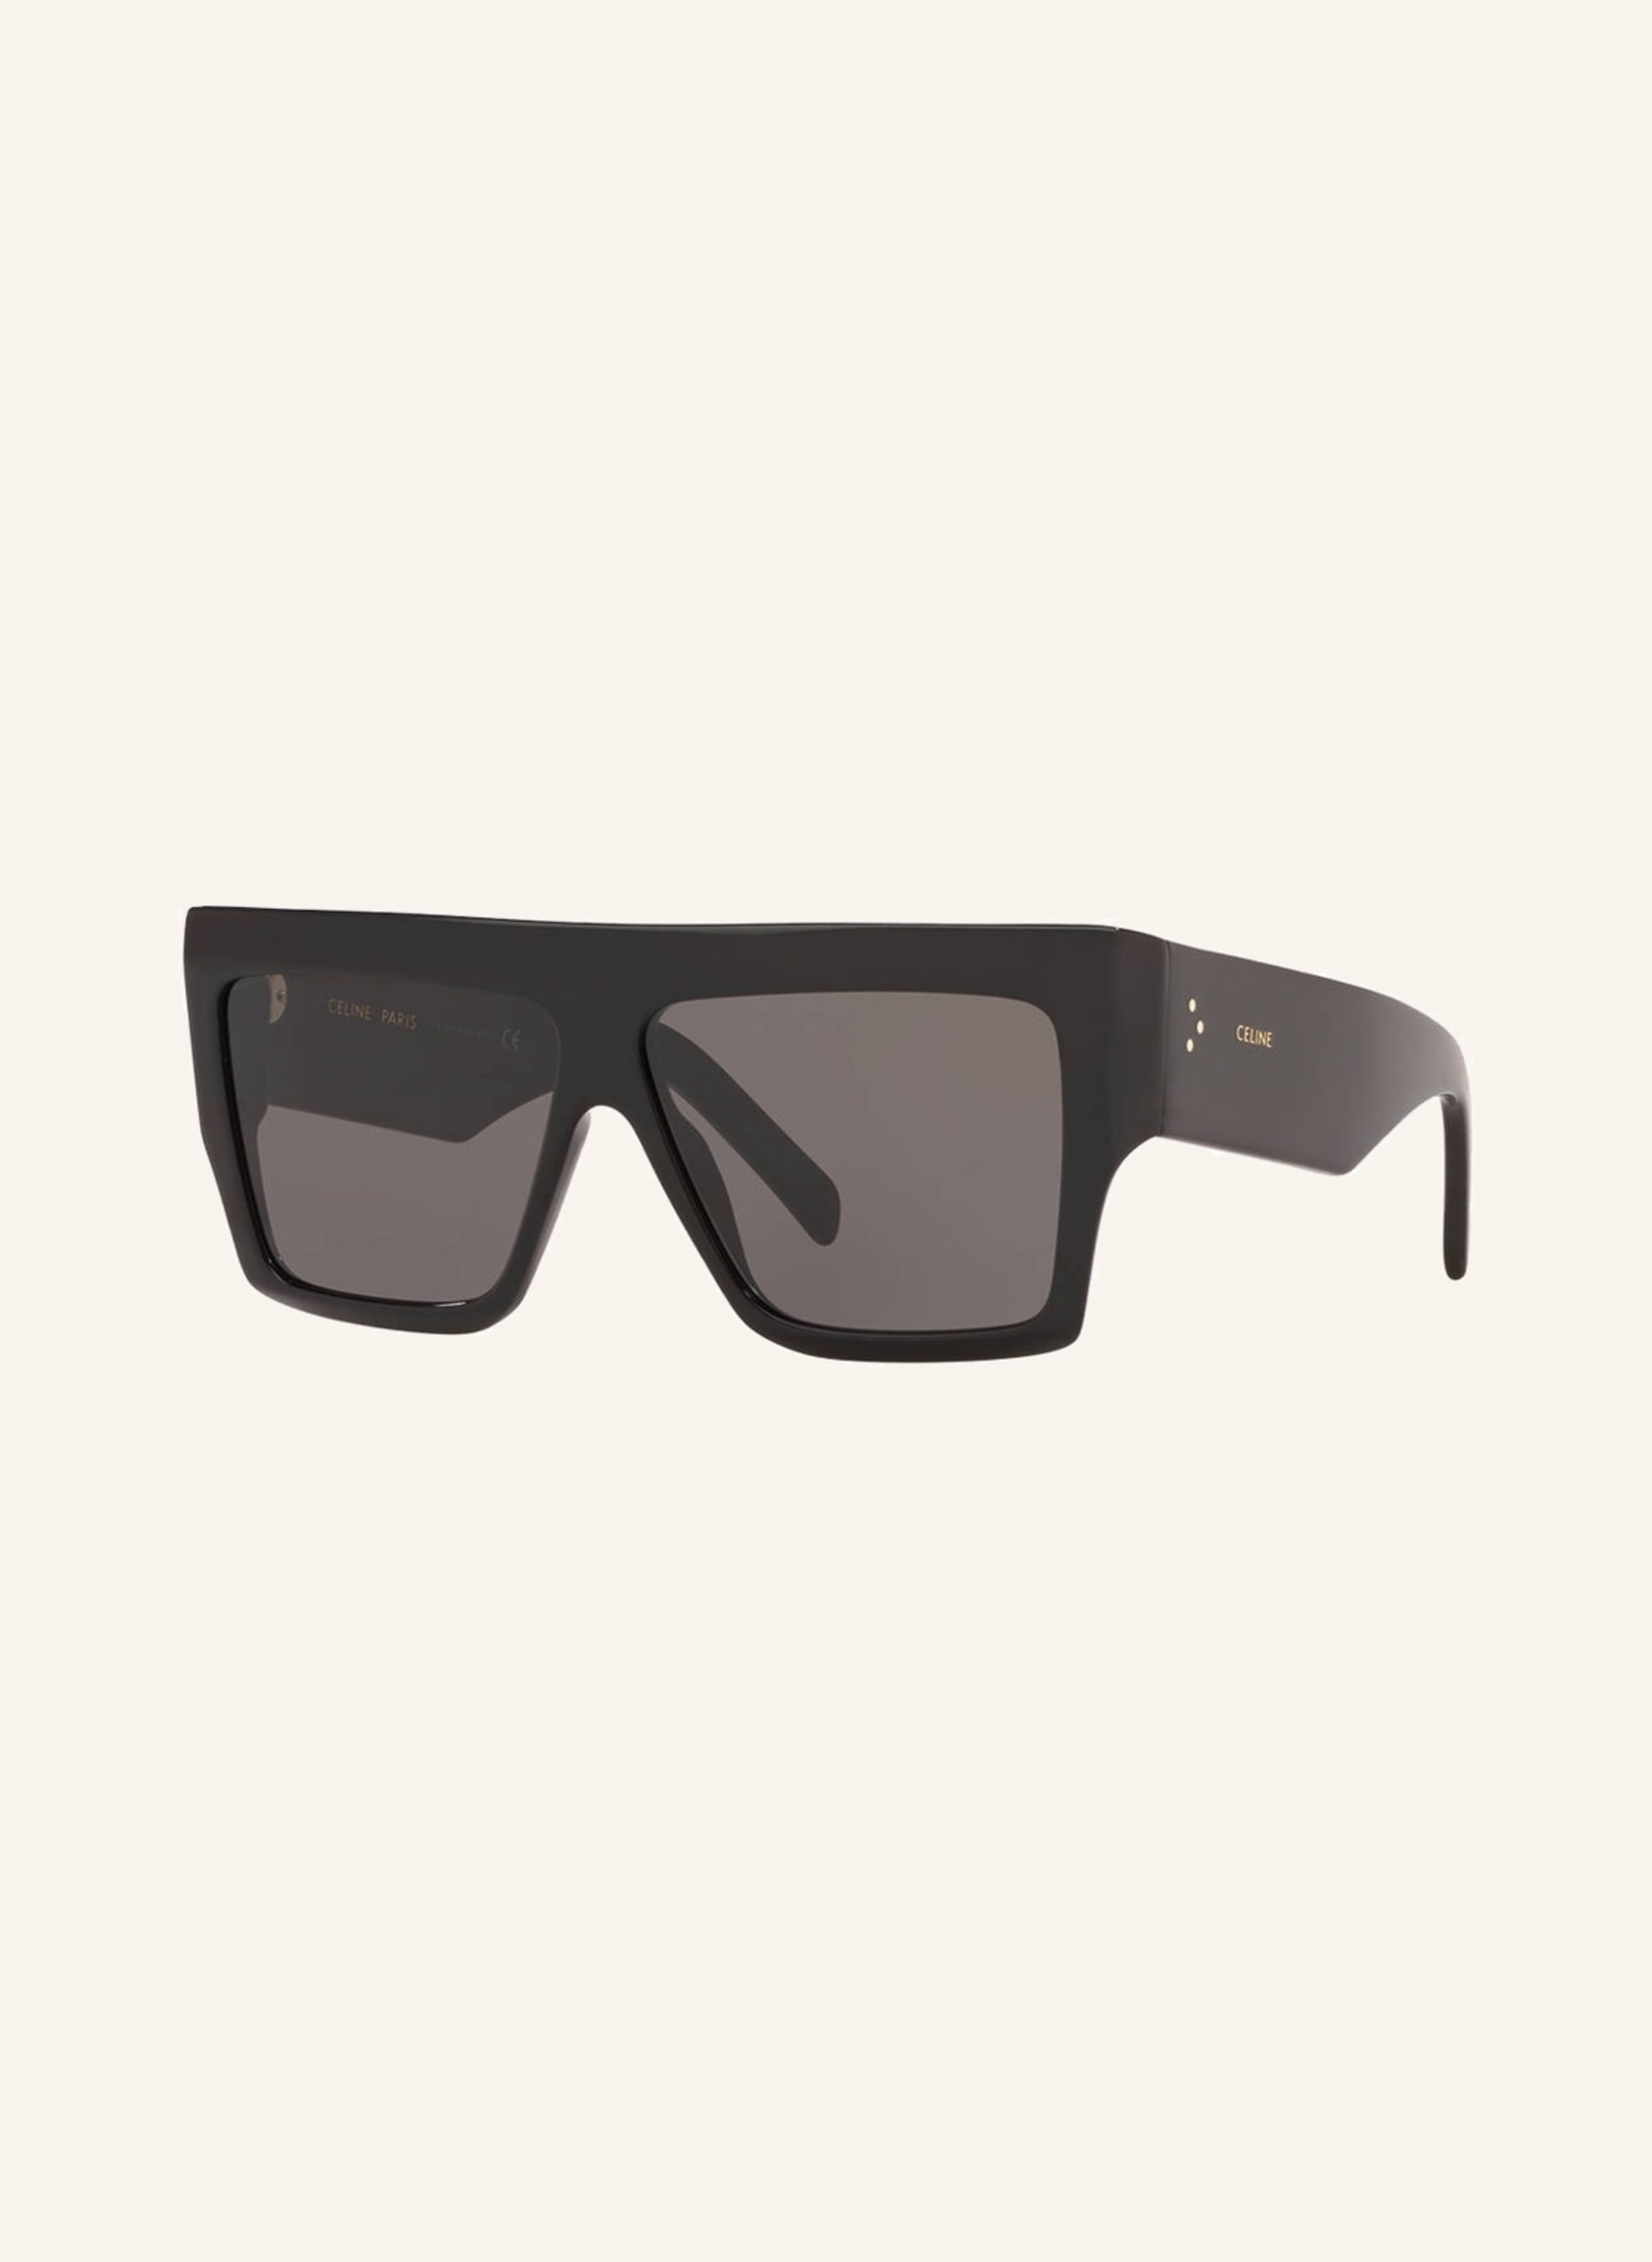 CELINE Sunglasses CL000240 in 1330l1 - black/ gray